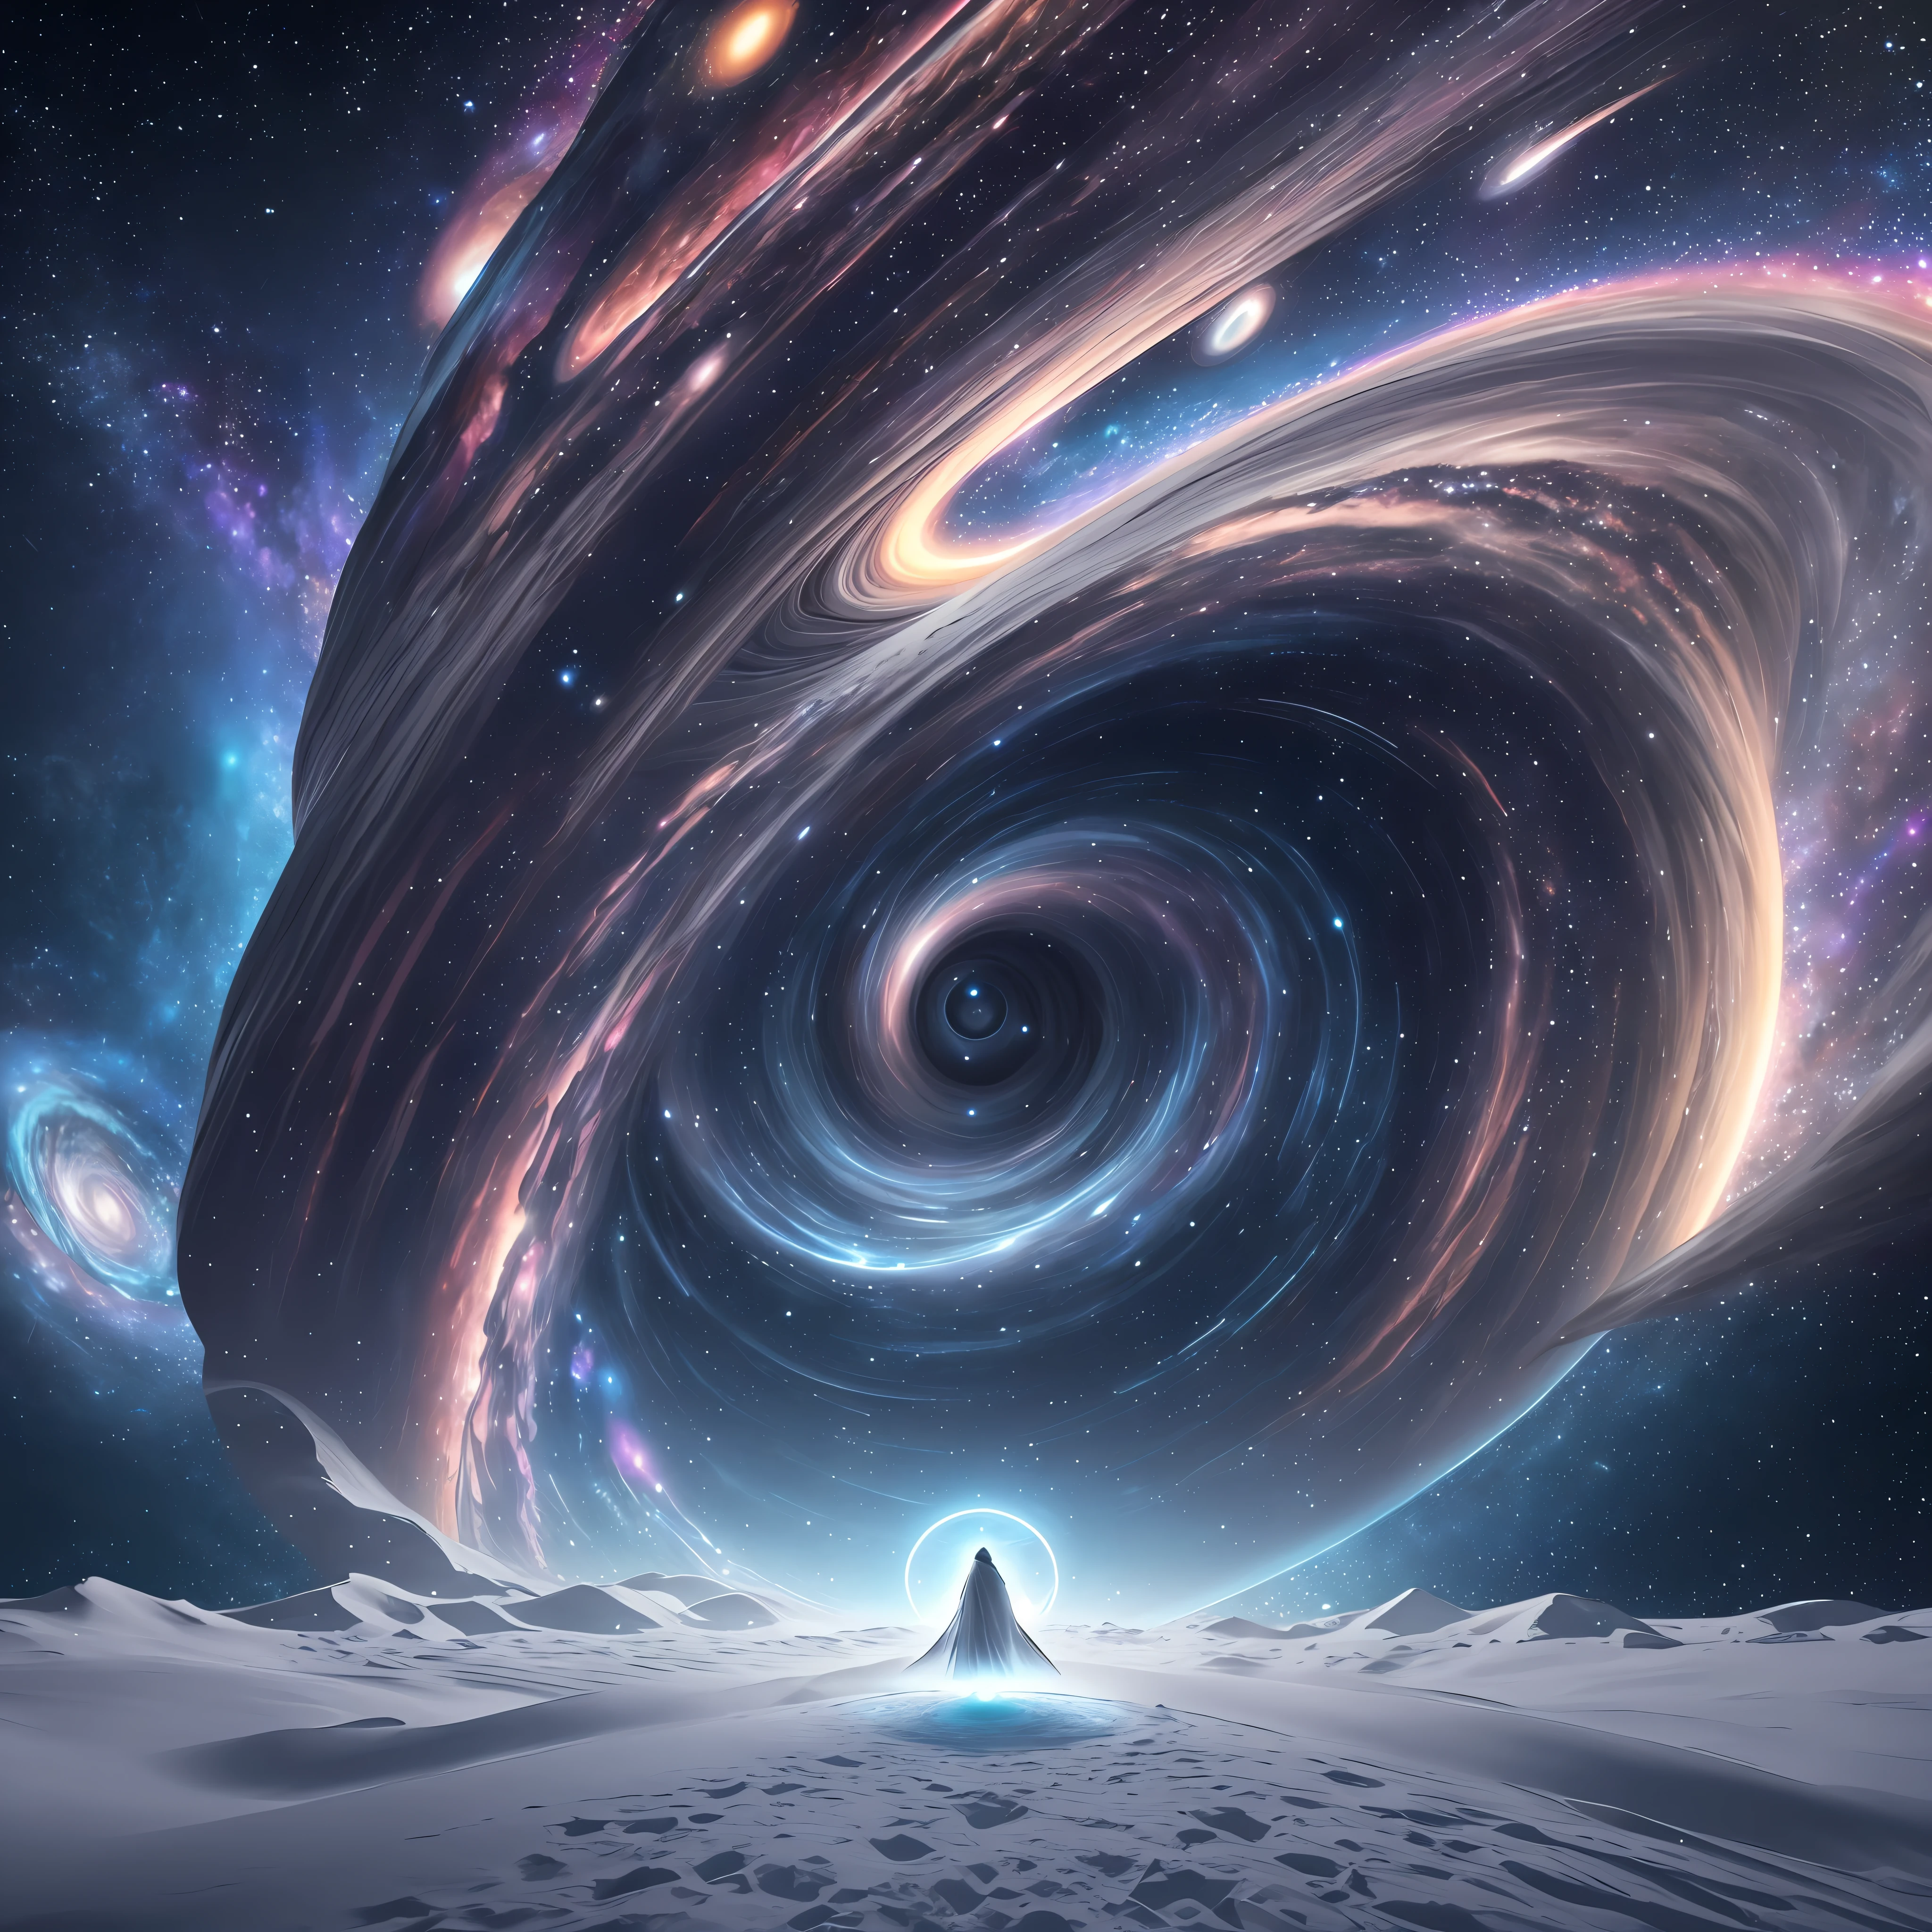 裹著白色斗篷的巨人，位於行星頂部，在星系背景的螺旋渦旋前, 天空中的魔法傳送門, 雲渦, 絢麗魔法時空傳送門, 32k 非常詳細, 超詳細, 超銳利, 超現實, 超複雜, 寫實主義風格